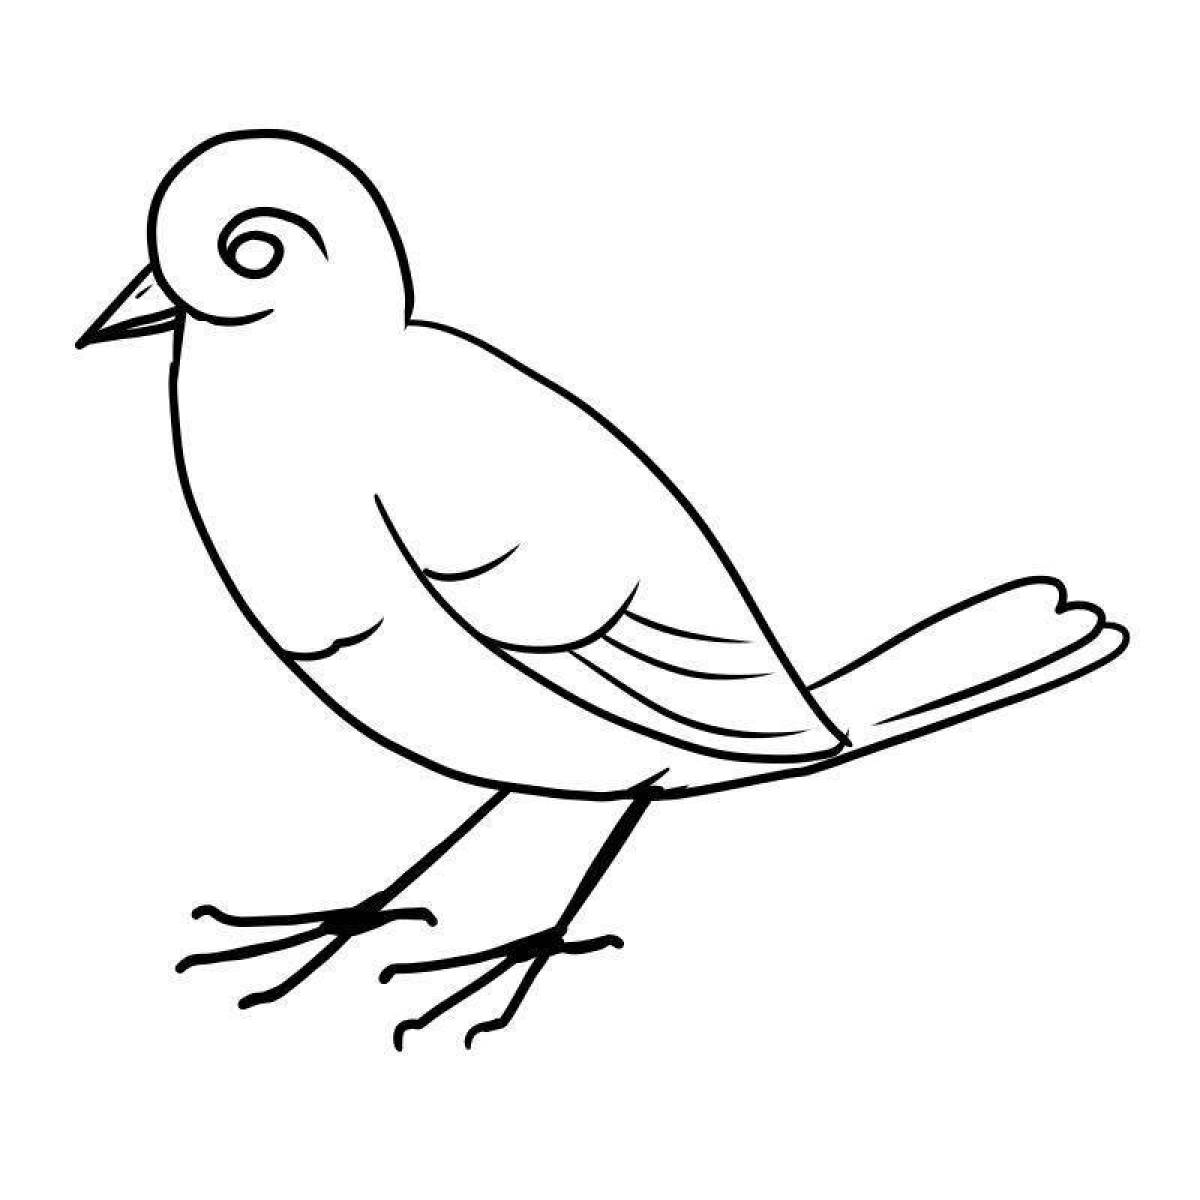 Playful pre-k coloring bird